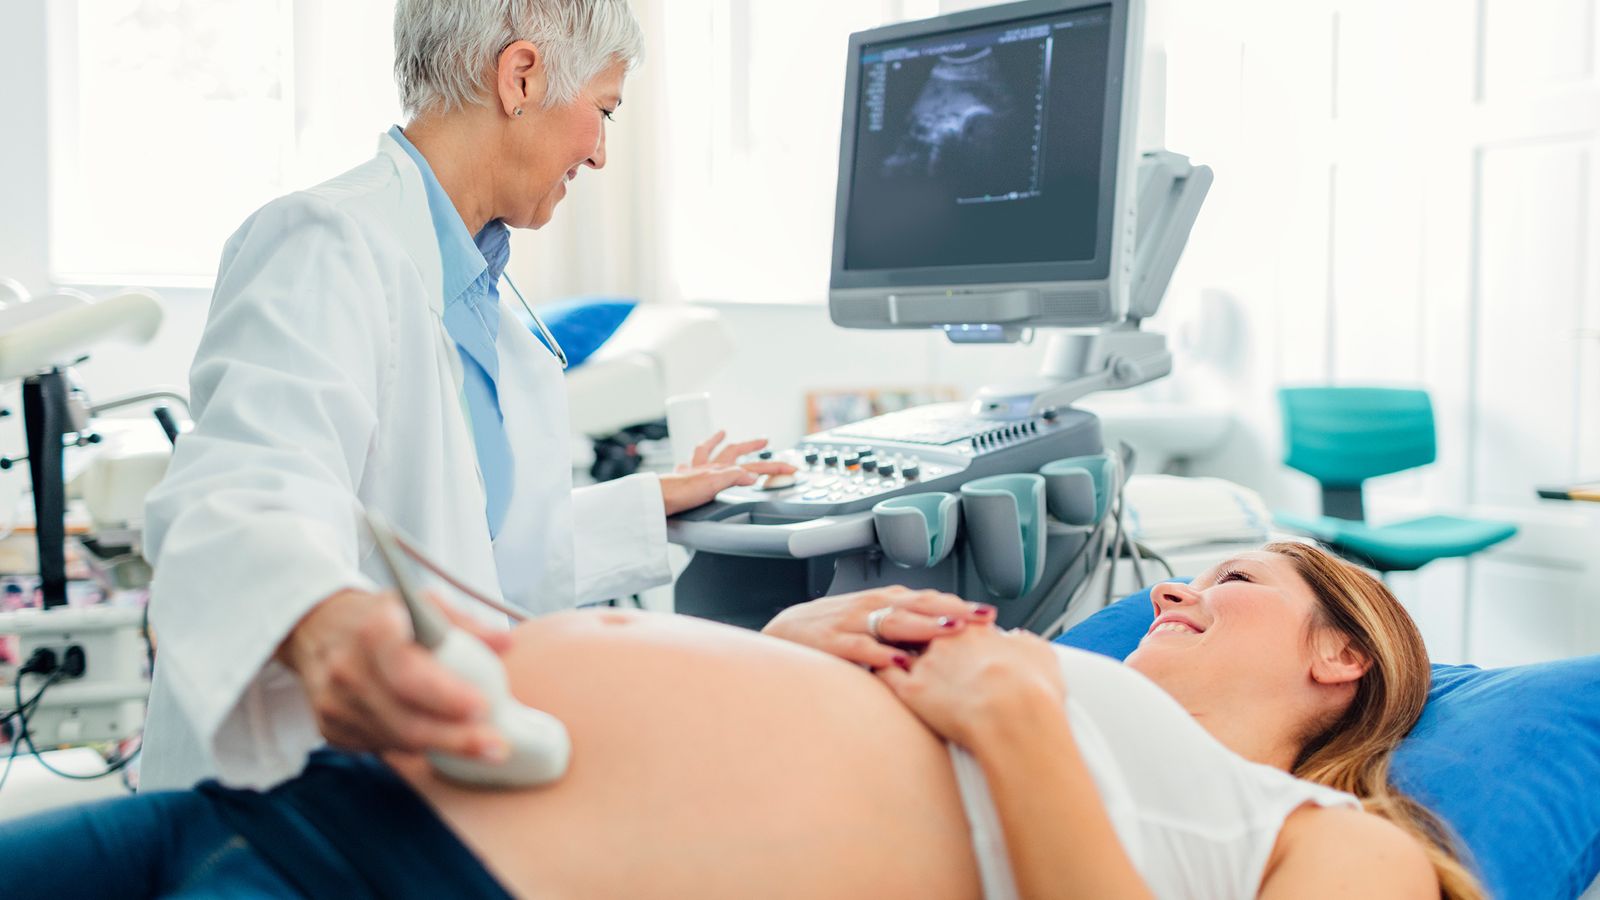 Ultraschalluntersuchung wird bei einer schwangeren Frau durchgeführt